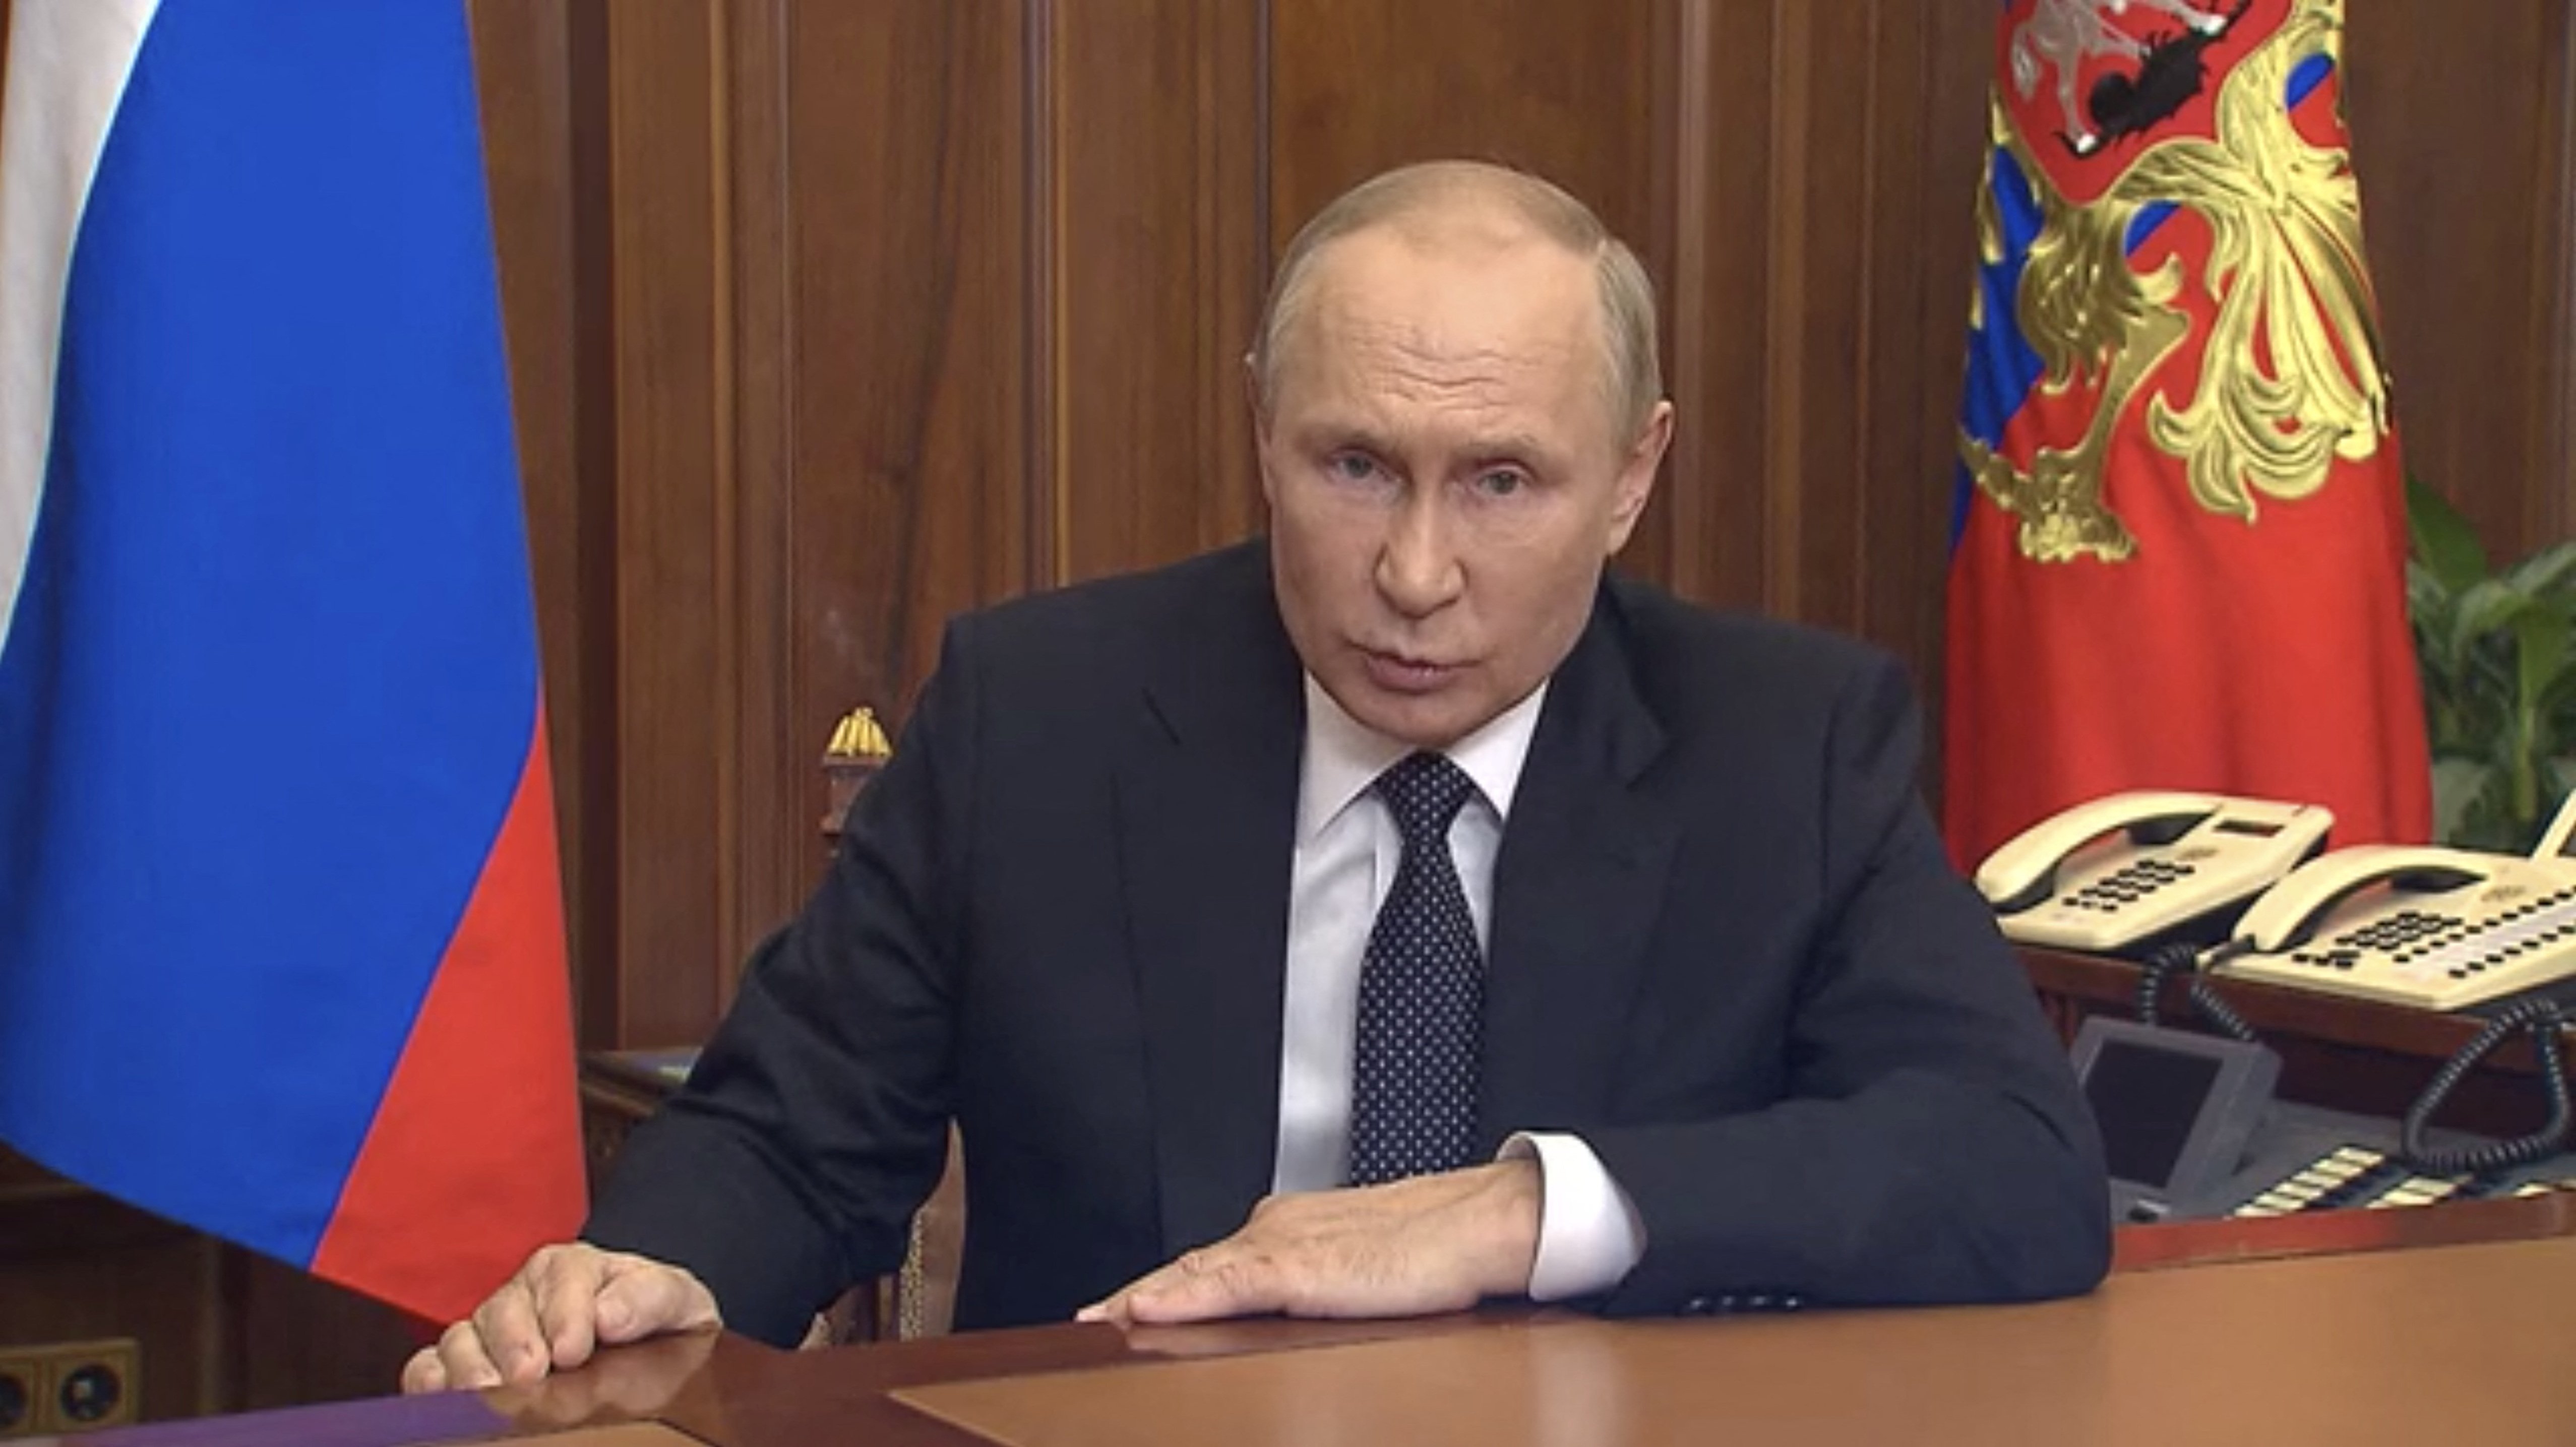 Ekspert: Derfor rasler Putin med sablen